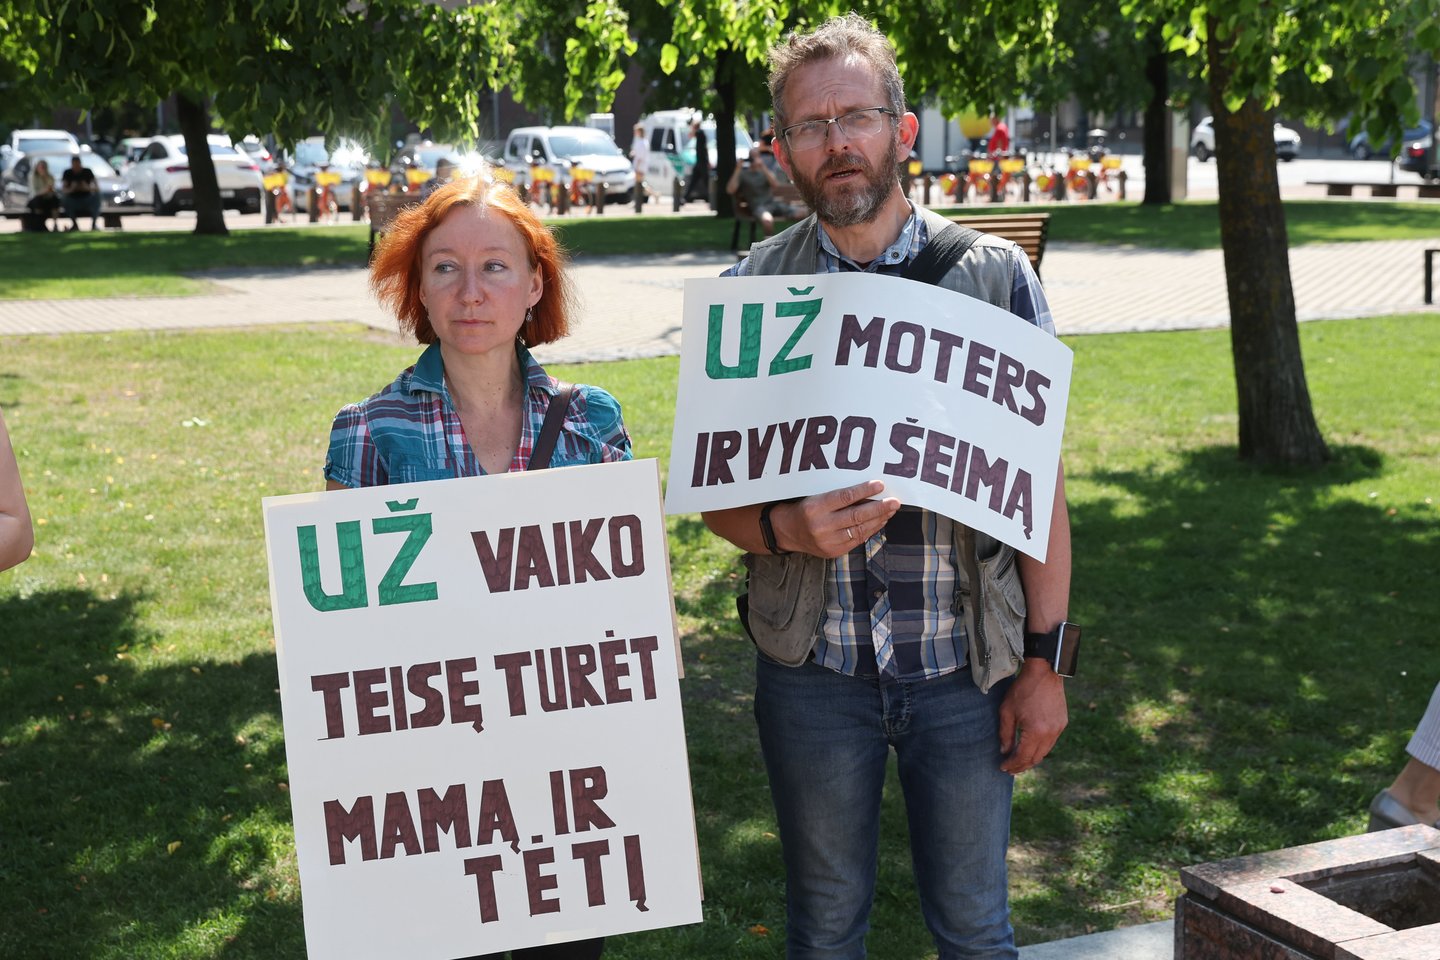 Prie Seimo rūmų susirinko kelios dešimtys protestuotojų, pasisakančių prieš Civilinės sąjungos įstatymą. <br>R.Danisevičiaus nuotr.